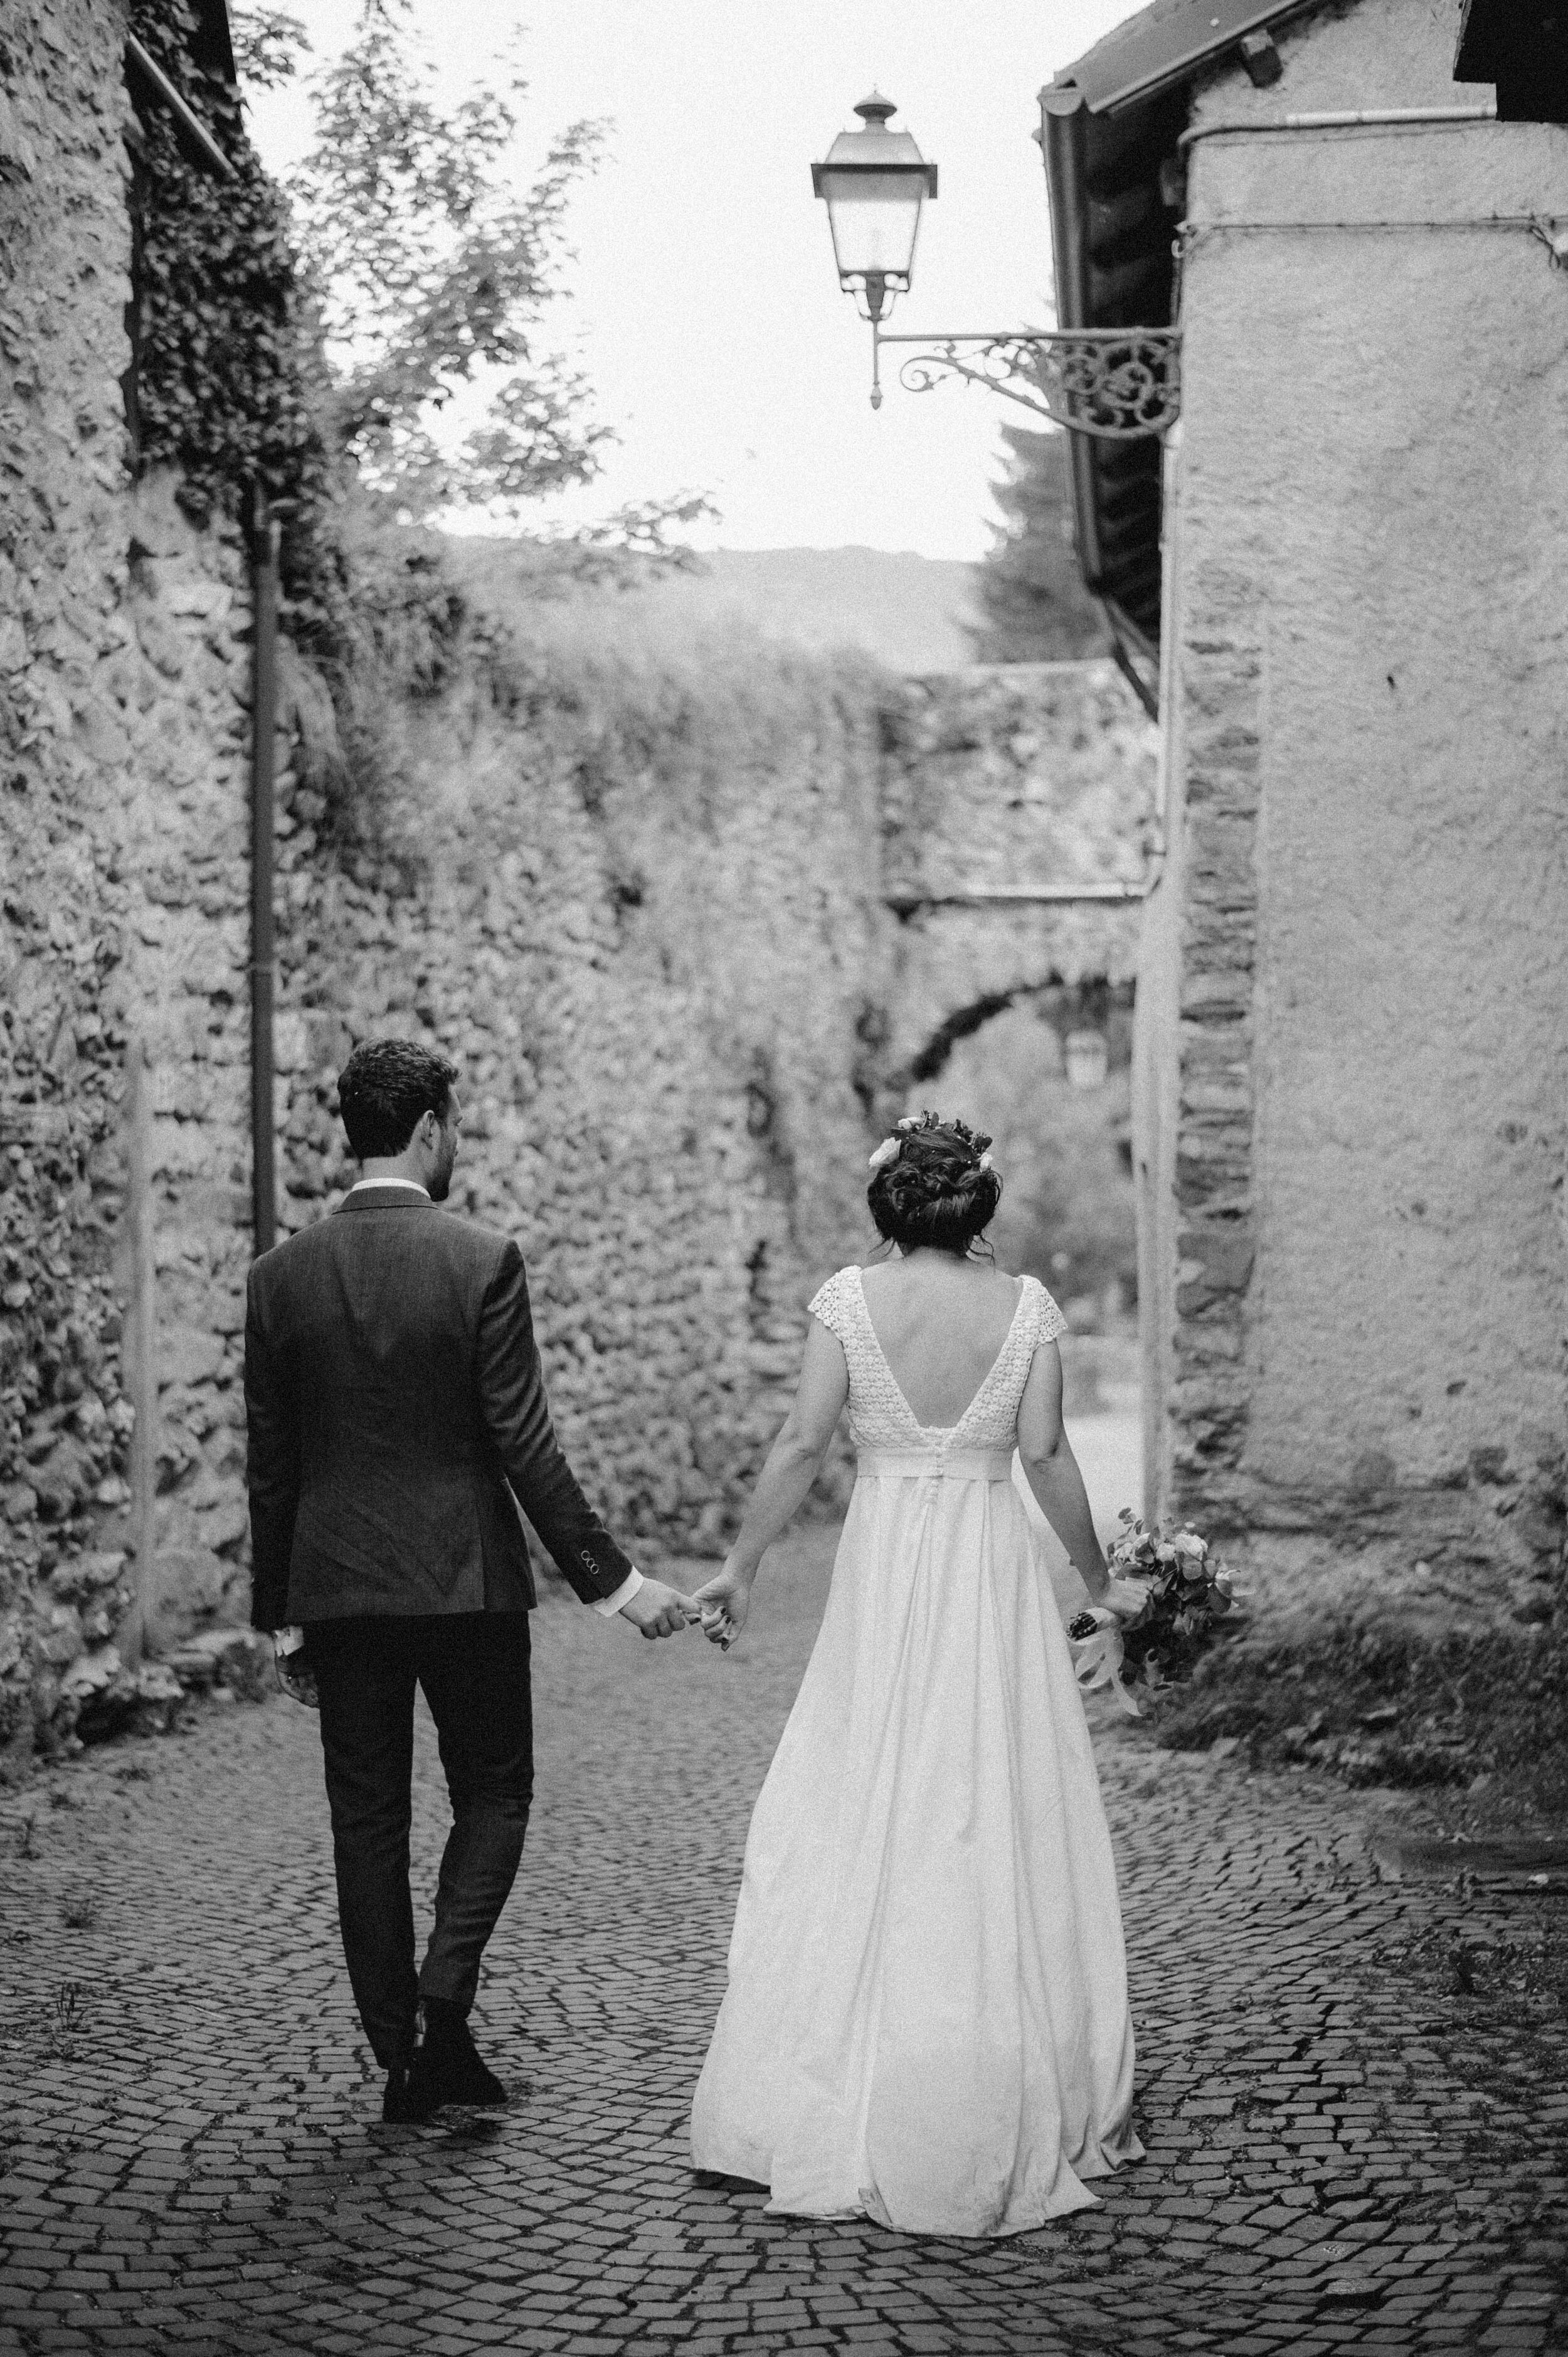 064 - Matrimonio in provincia di Cuneo - Miriam Callegari Fotografa.JPG